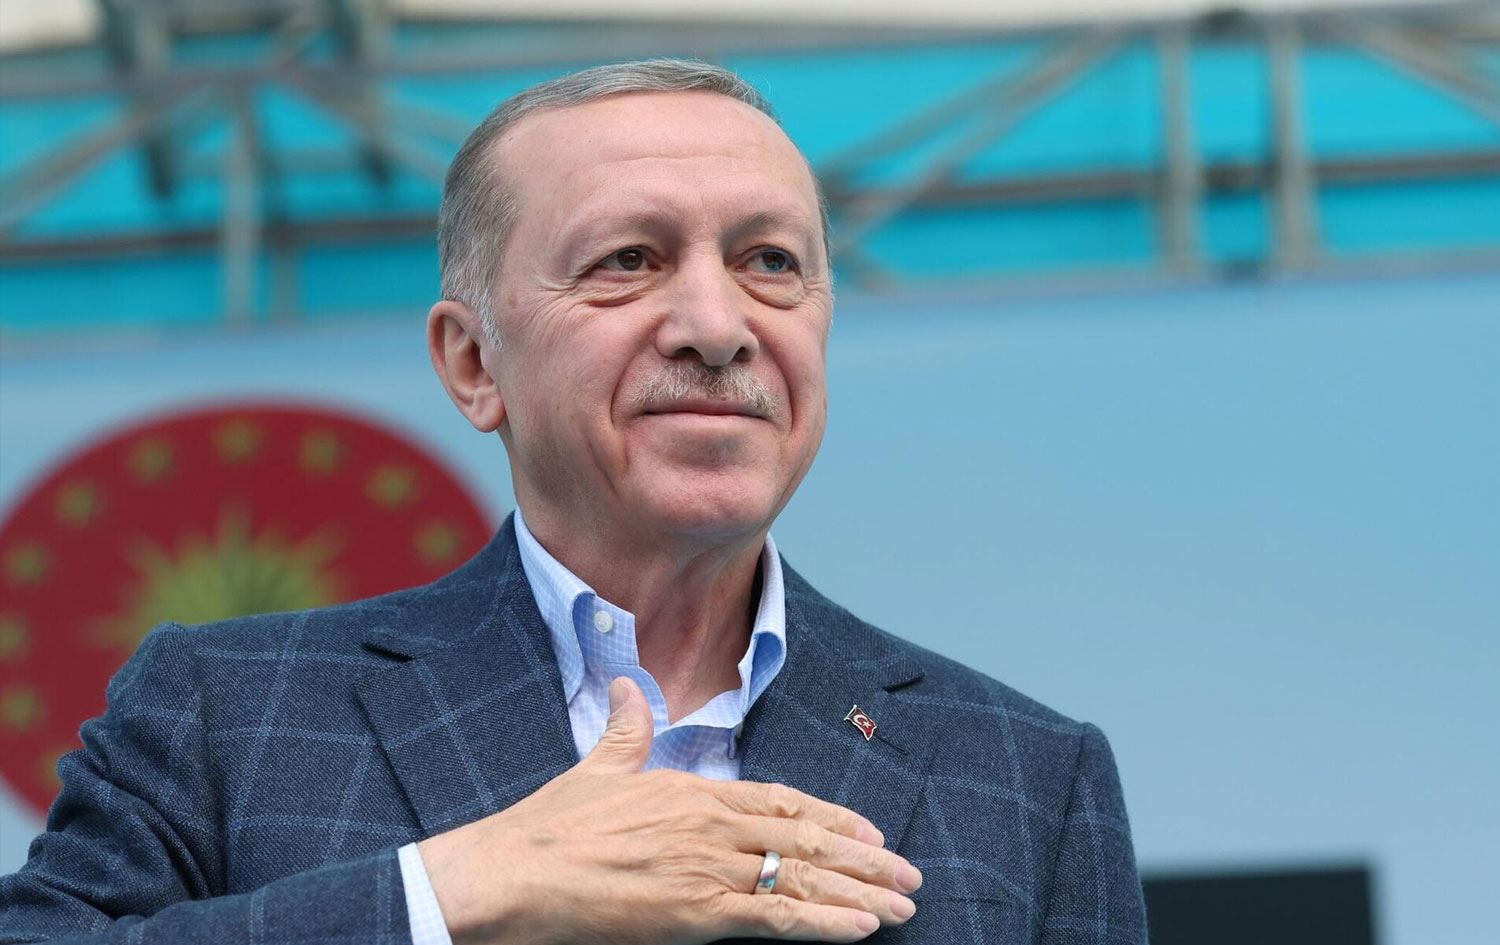 Dünya liderleri Erdoğan'ı tebrik etti | Rudaw.net